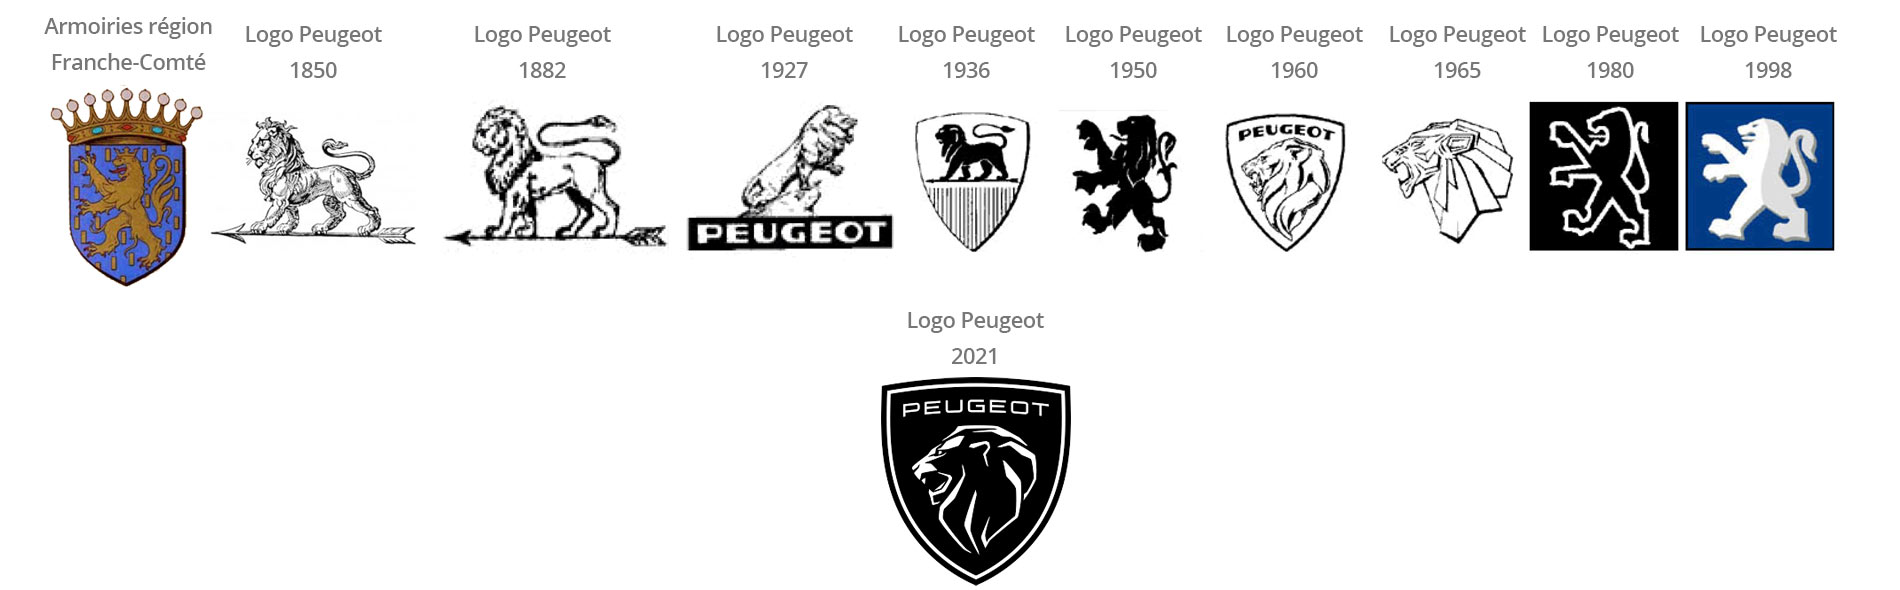 évolution du logo de la marque Peugeot depuis 1850